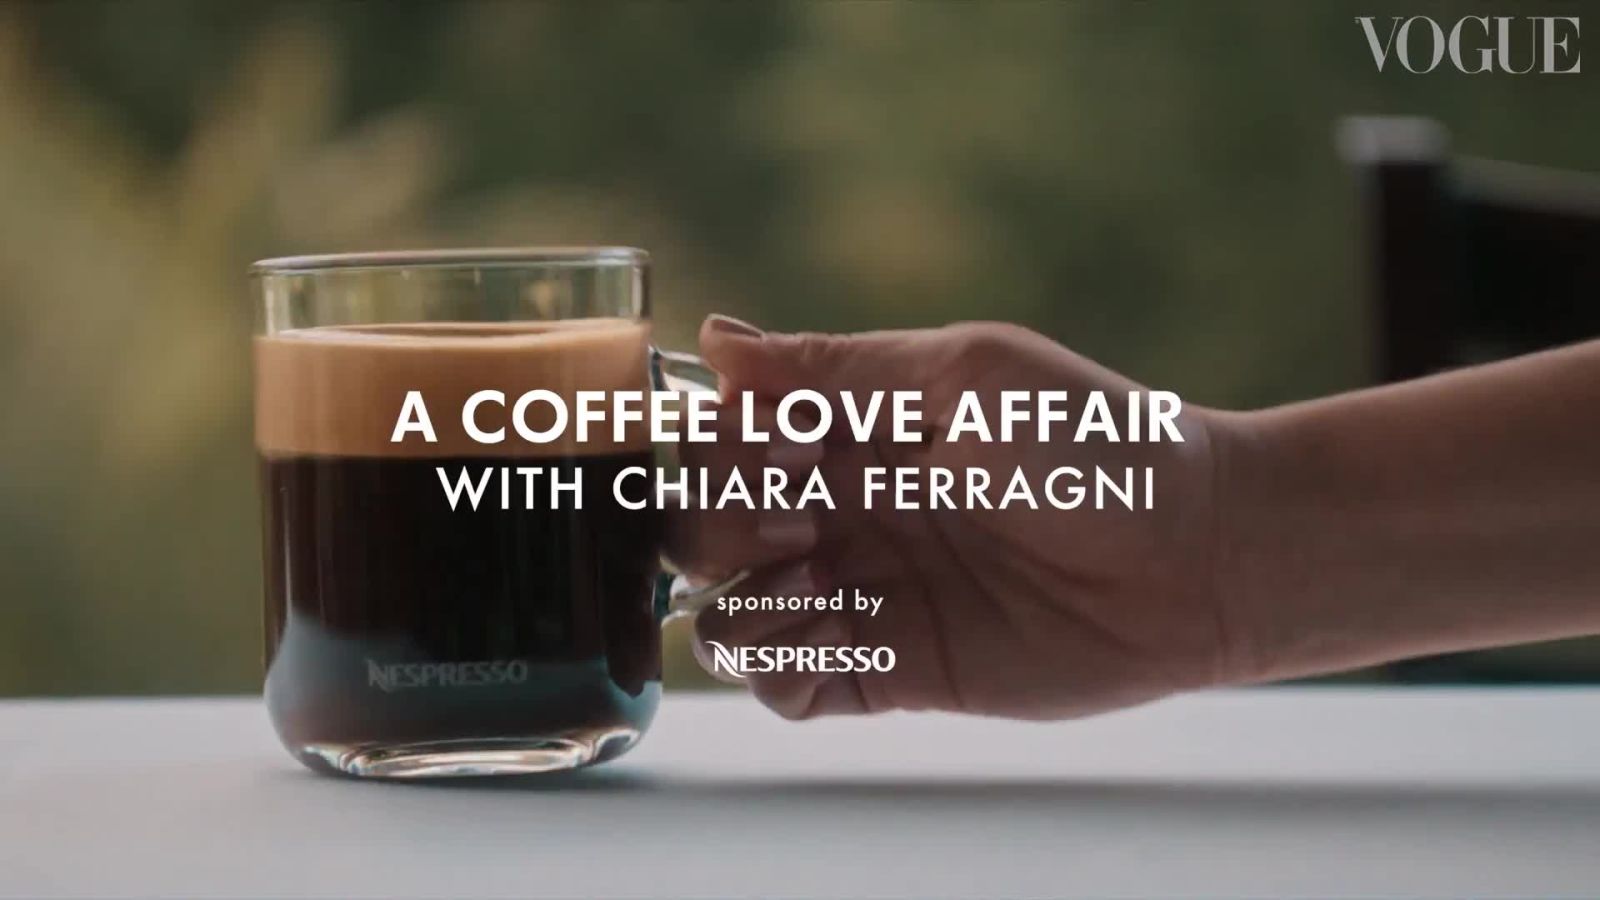 Un viaggio illuminante nel mondo della coltivazione del caffè Nespresso con Chiara Ferragni